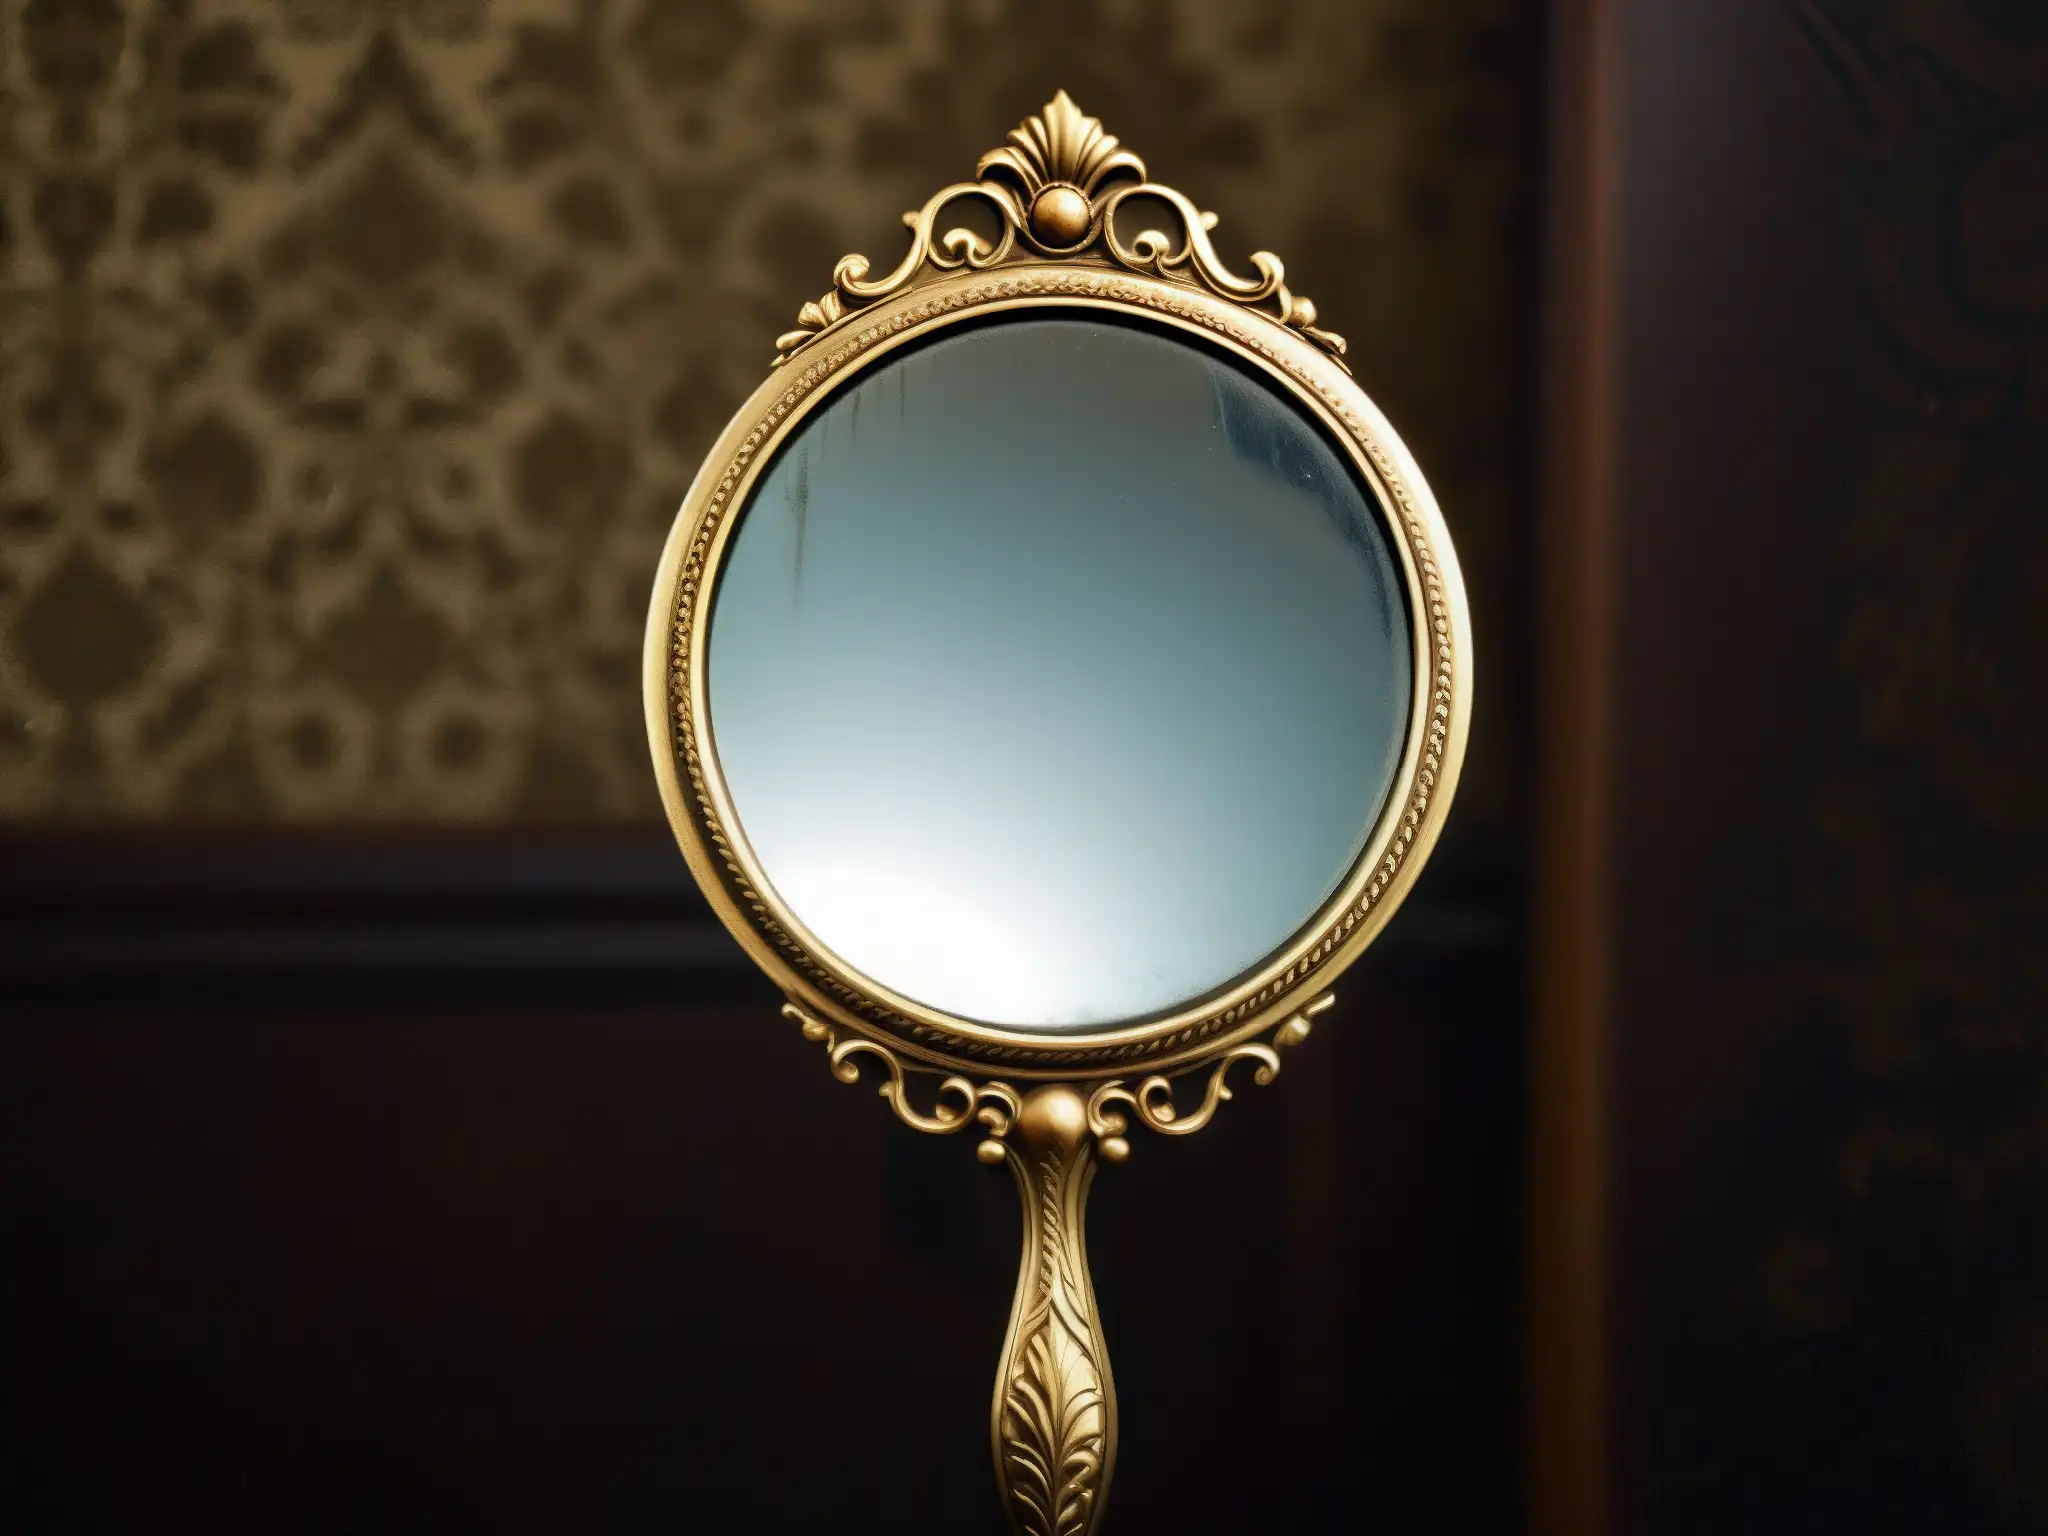 Reflejo inquietante en espejo antiguo decorado, estudio sobre sugestión y miedo en Candyman